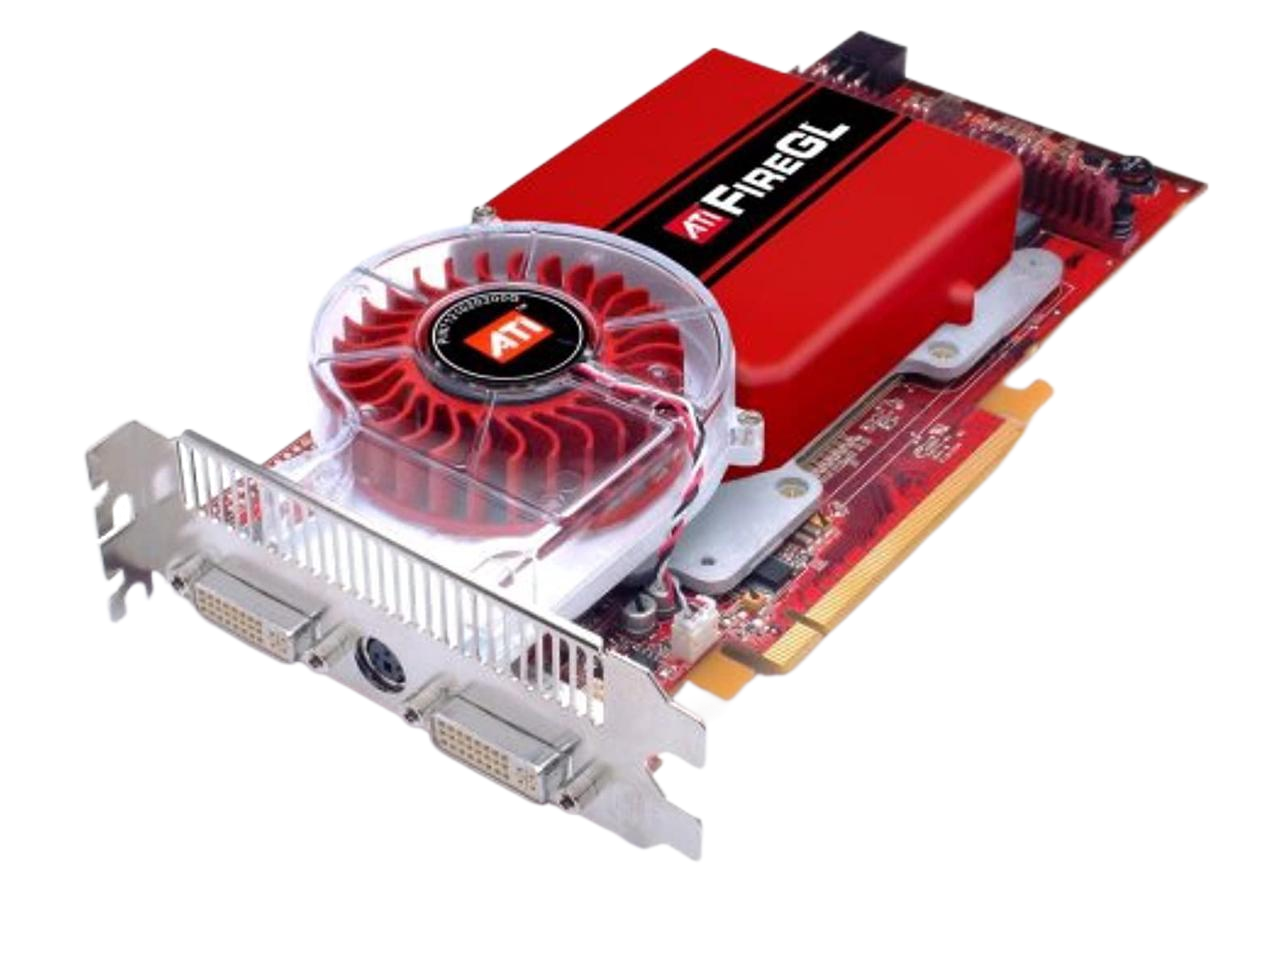 AMD ATI FireGL V7300 512 MB PCIE Video Card